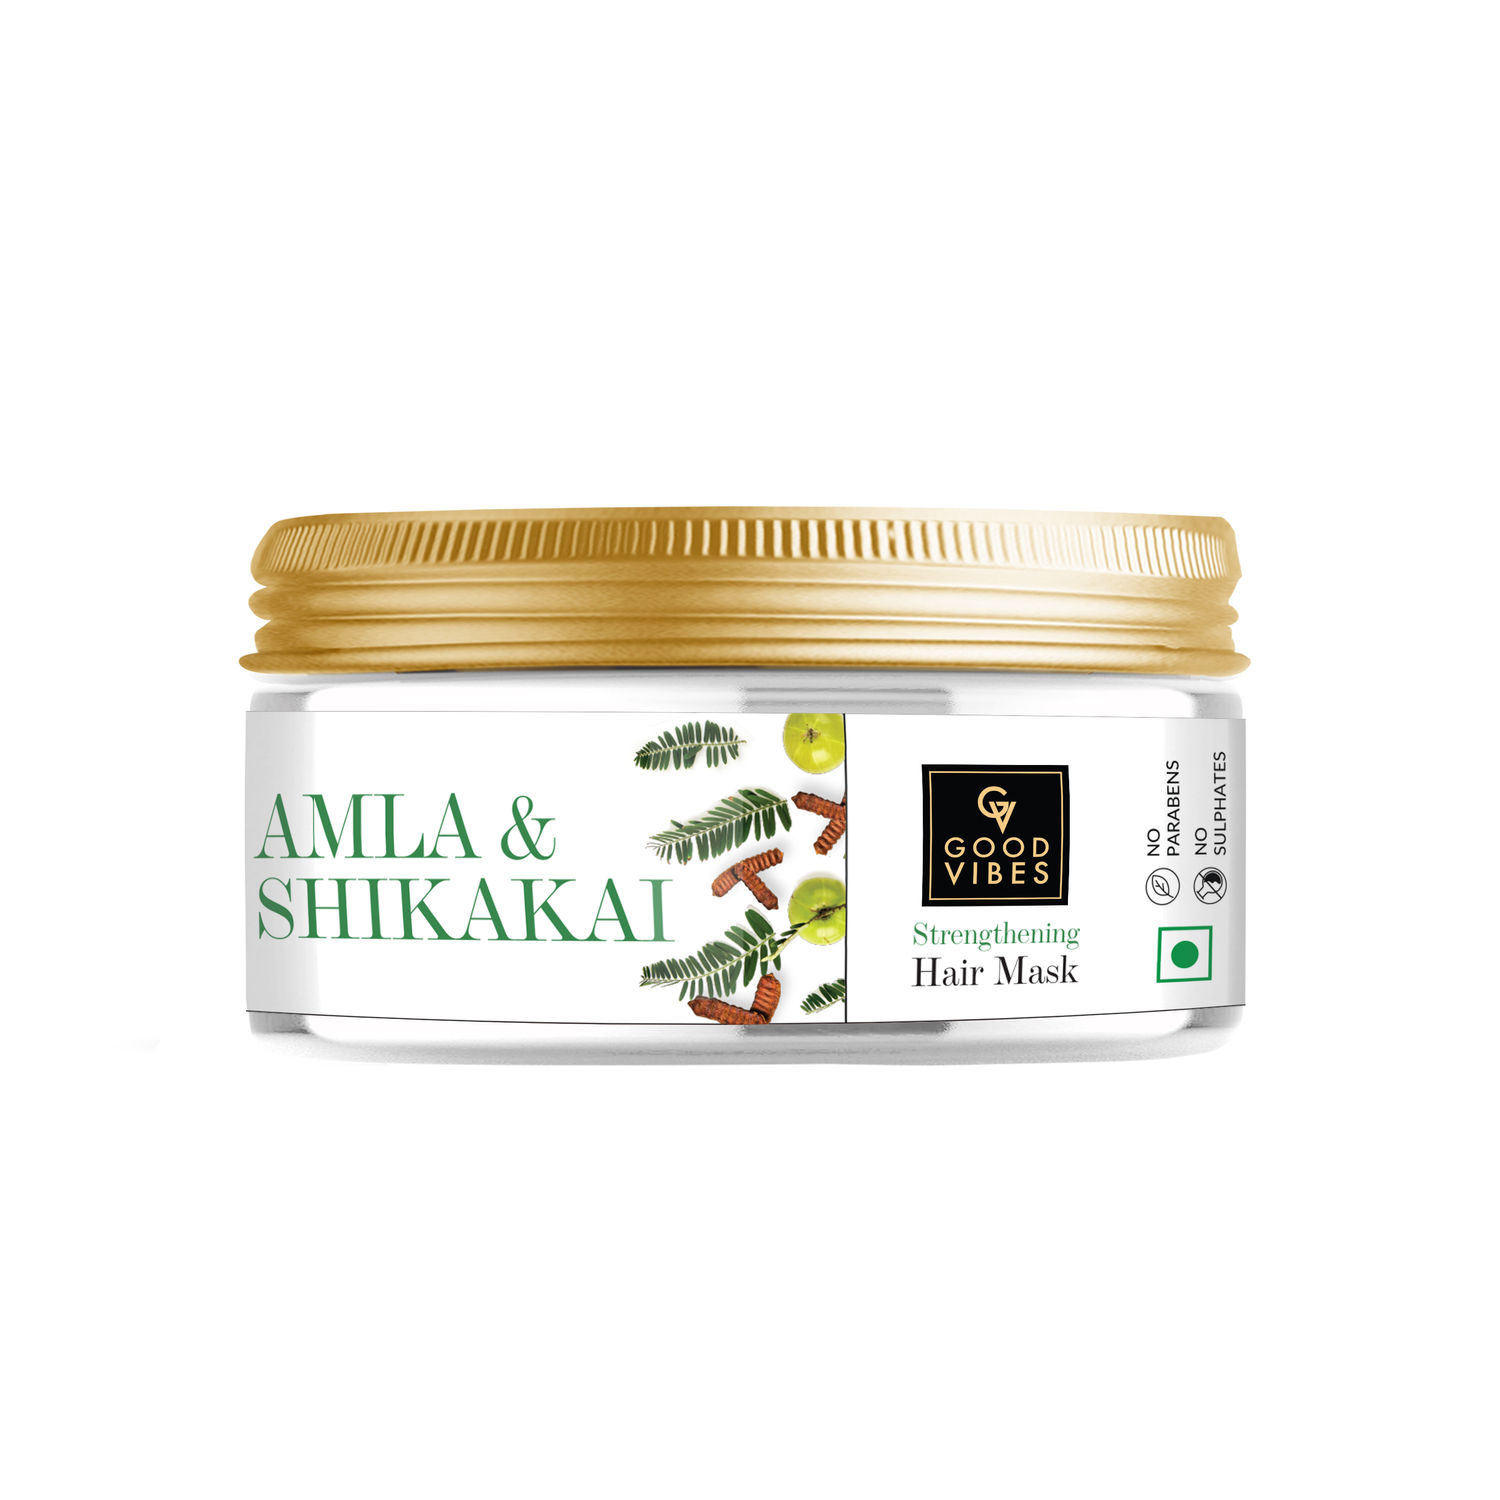 Buy Good Vibes Amla & Shikakai Strengthening Hair Mask (200g) - Purplle